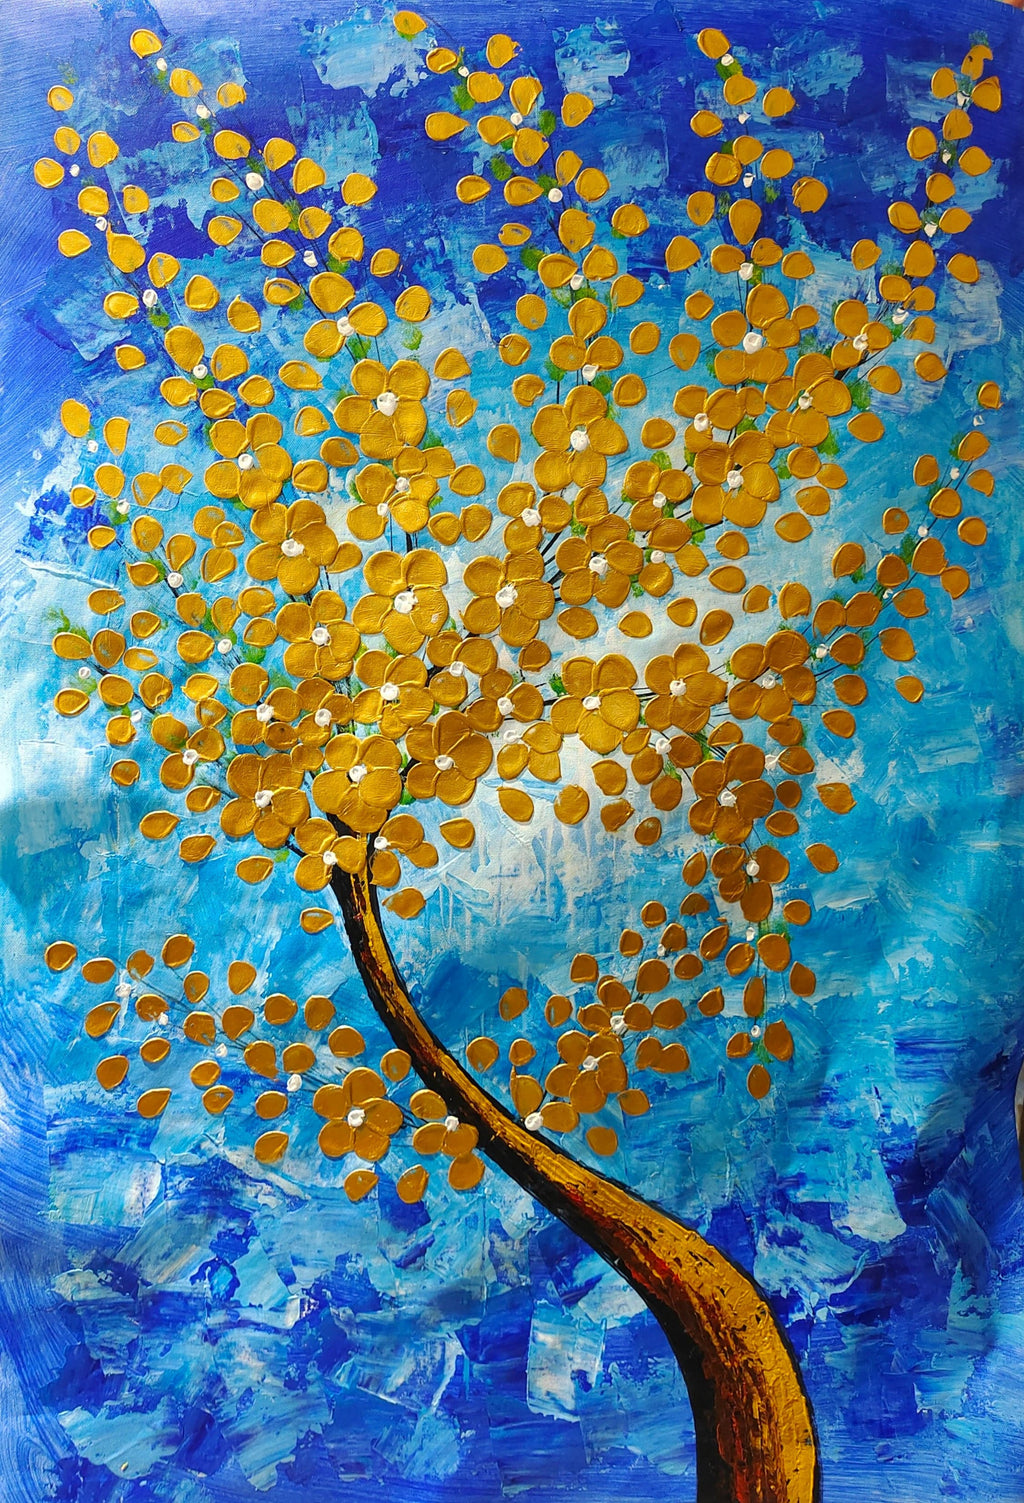 Framed 1 Panel - Golden Tree